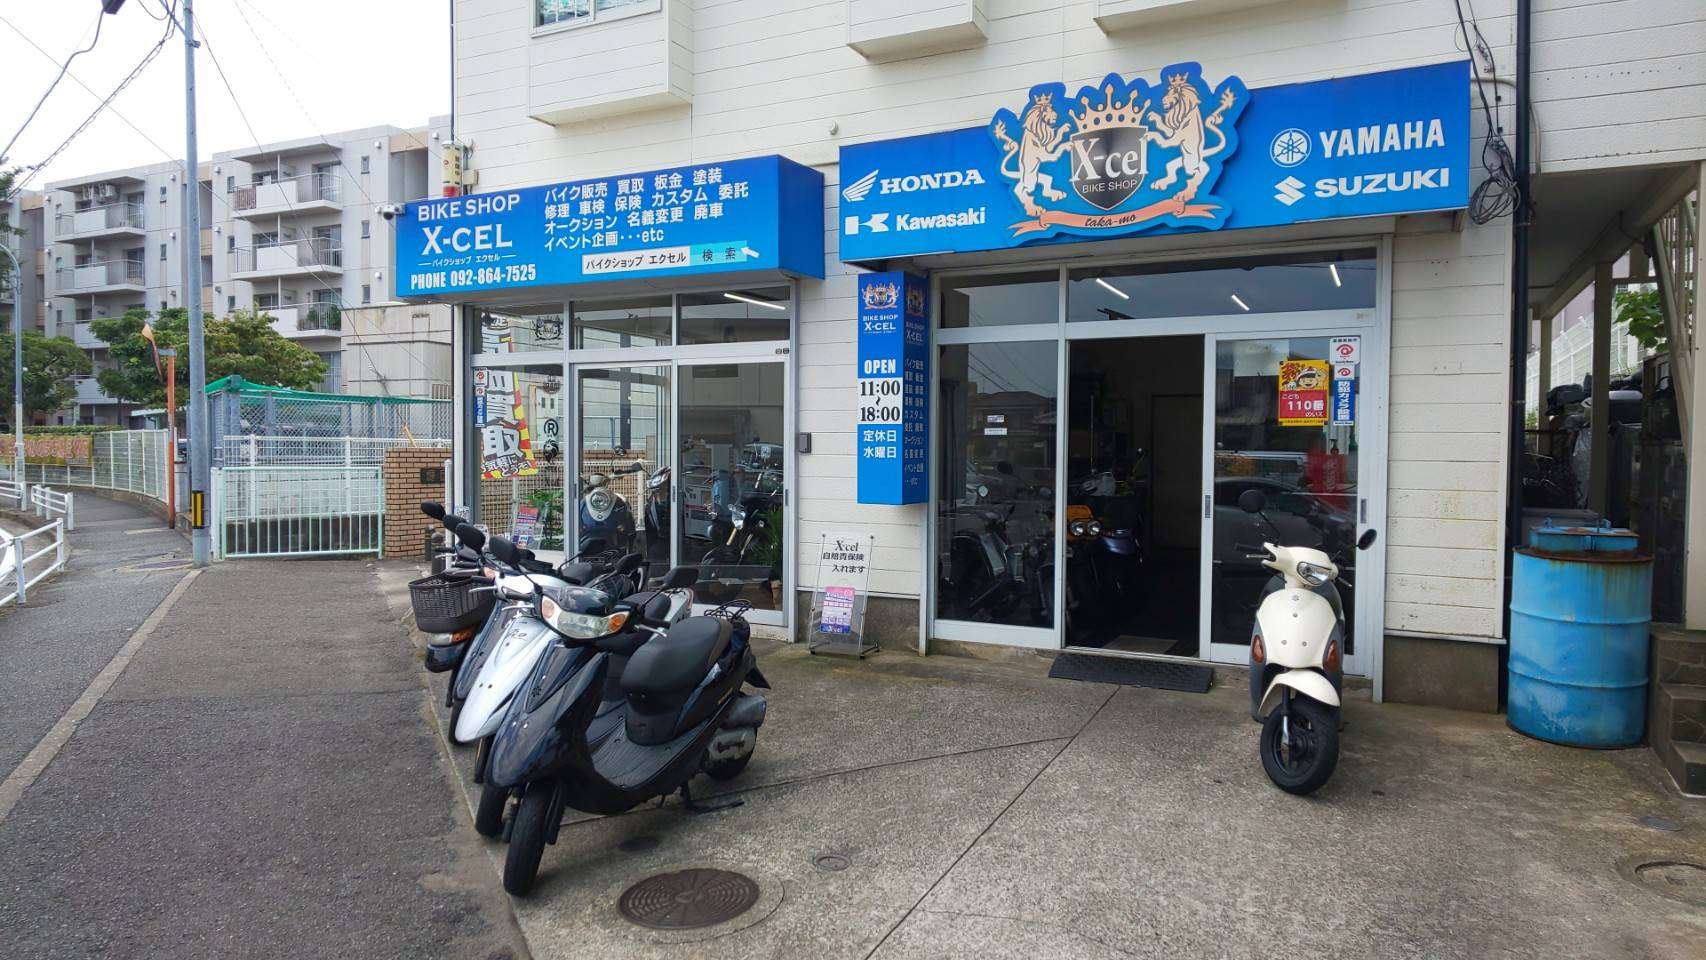 福岡県福岡市のバイク・修理【バイクショップエクセル(X-cel)】<span>充実した在庫数、サービス、安心できるバイクショップ</span>